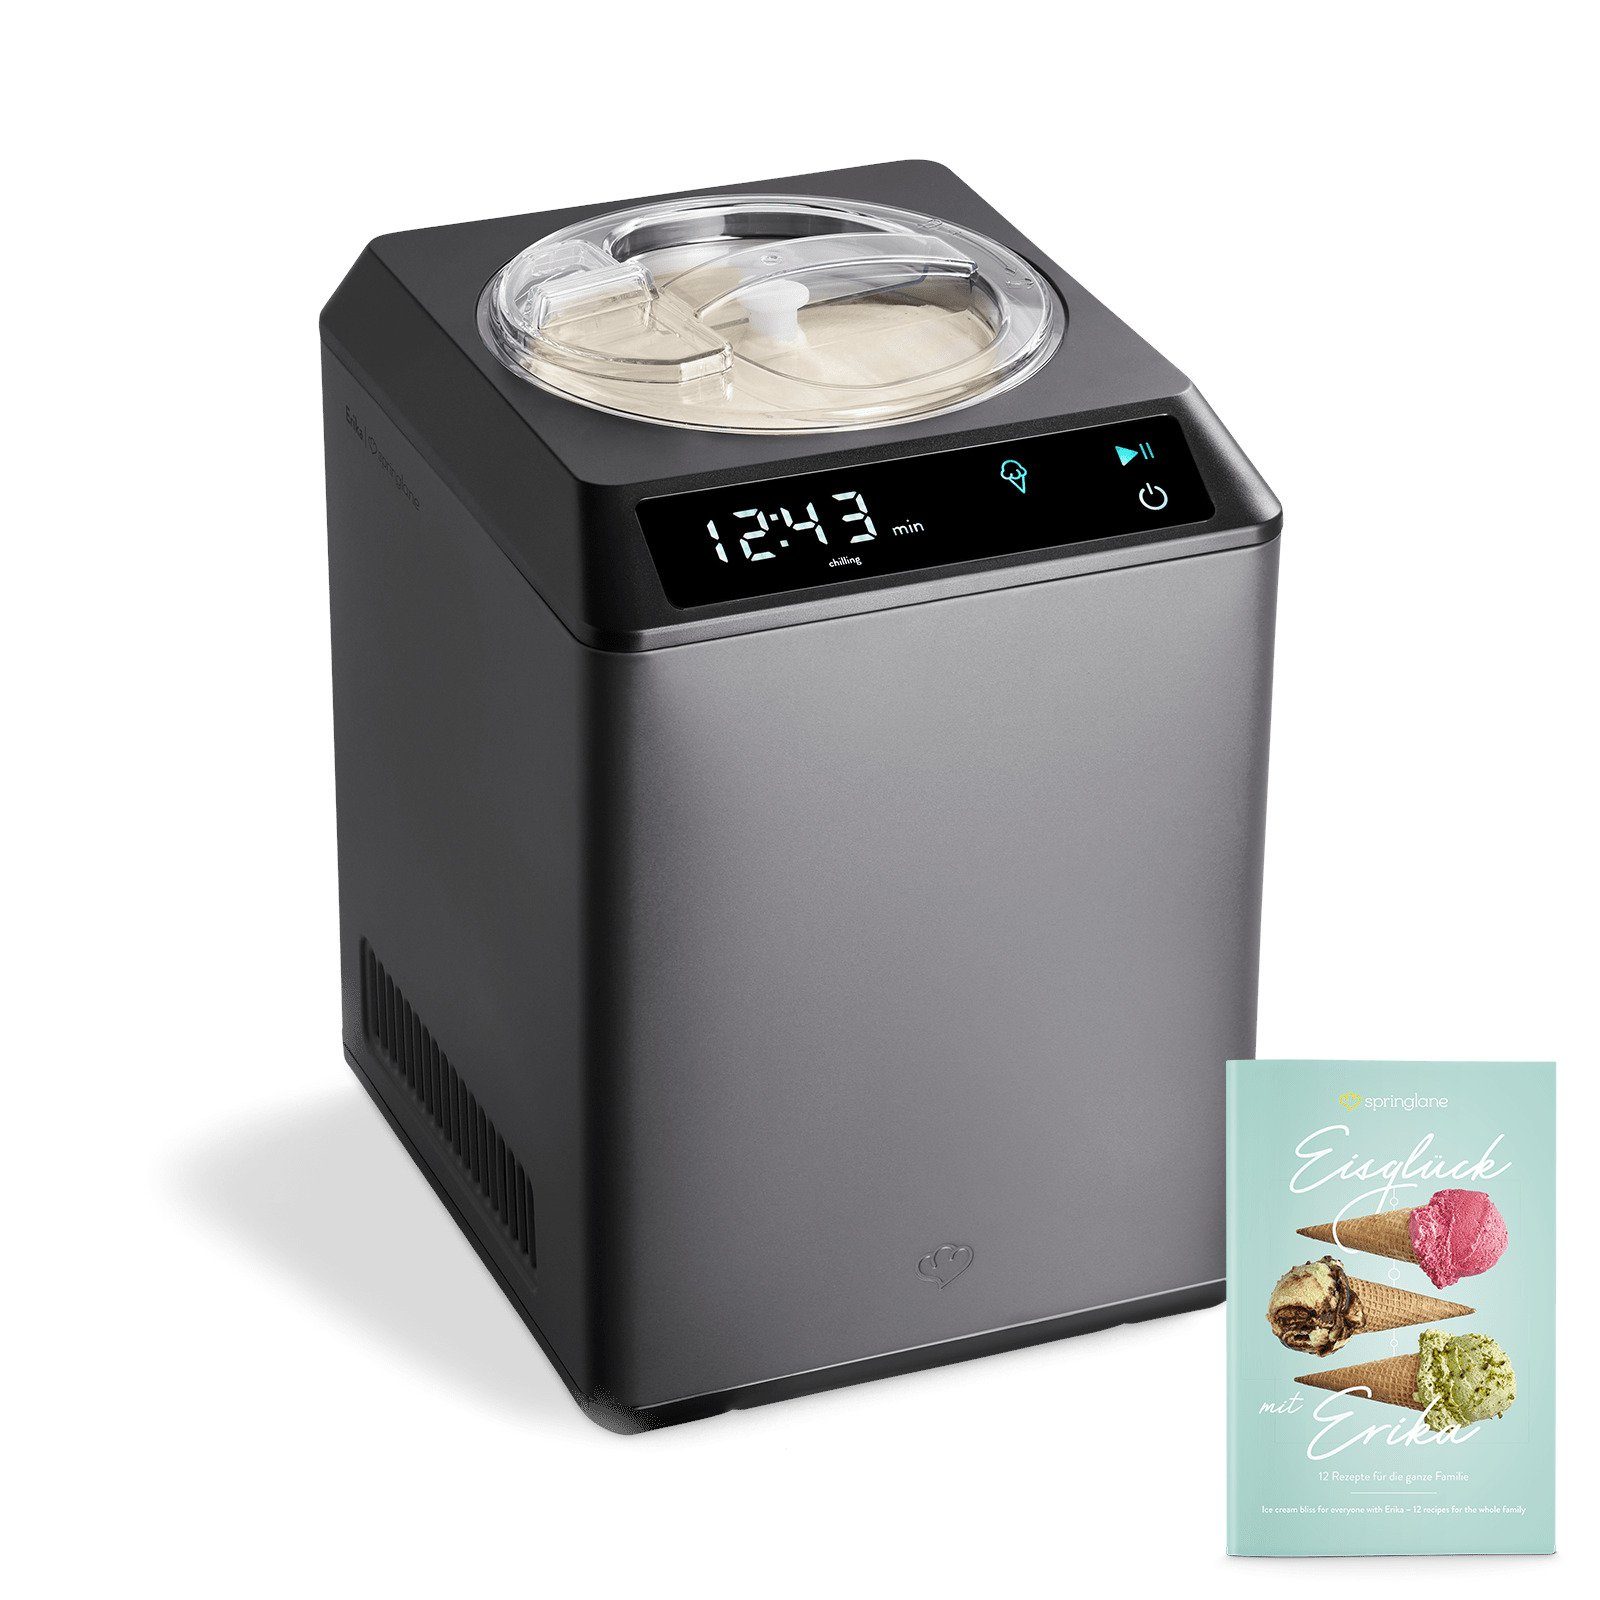 Springlane Eismaschine & Joghurtbereiter mit Kompressor Erika, 2.5 l, 250 W  online kaufen | OTTO